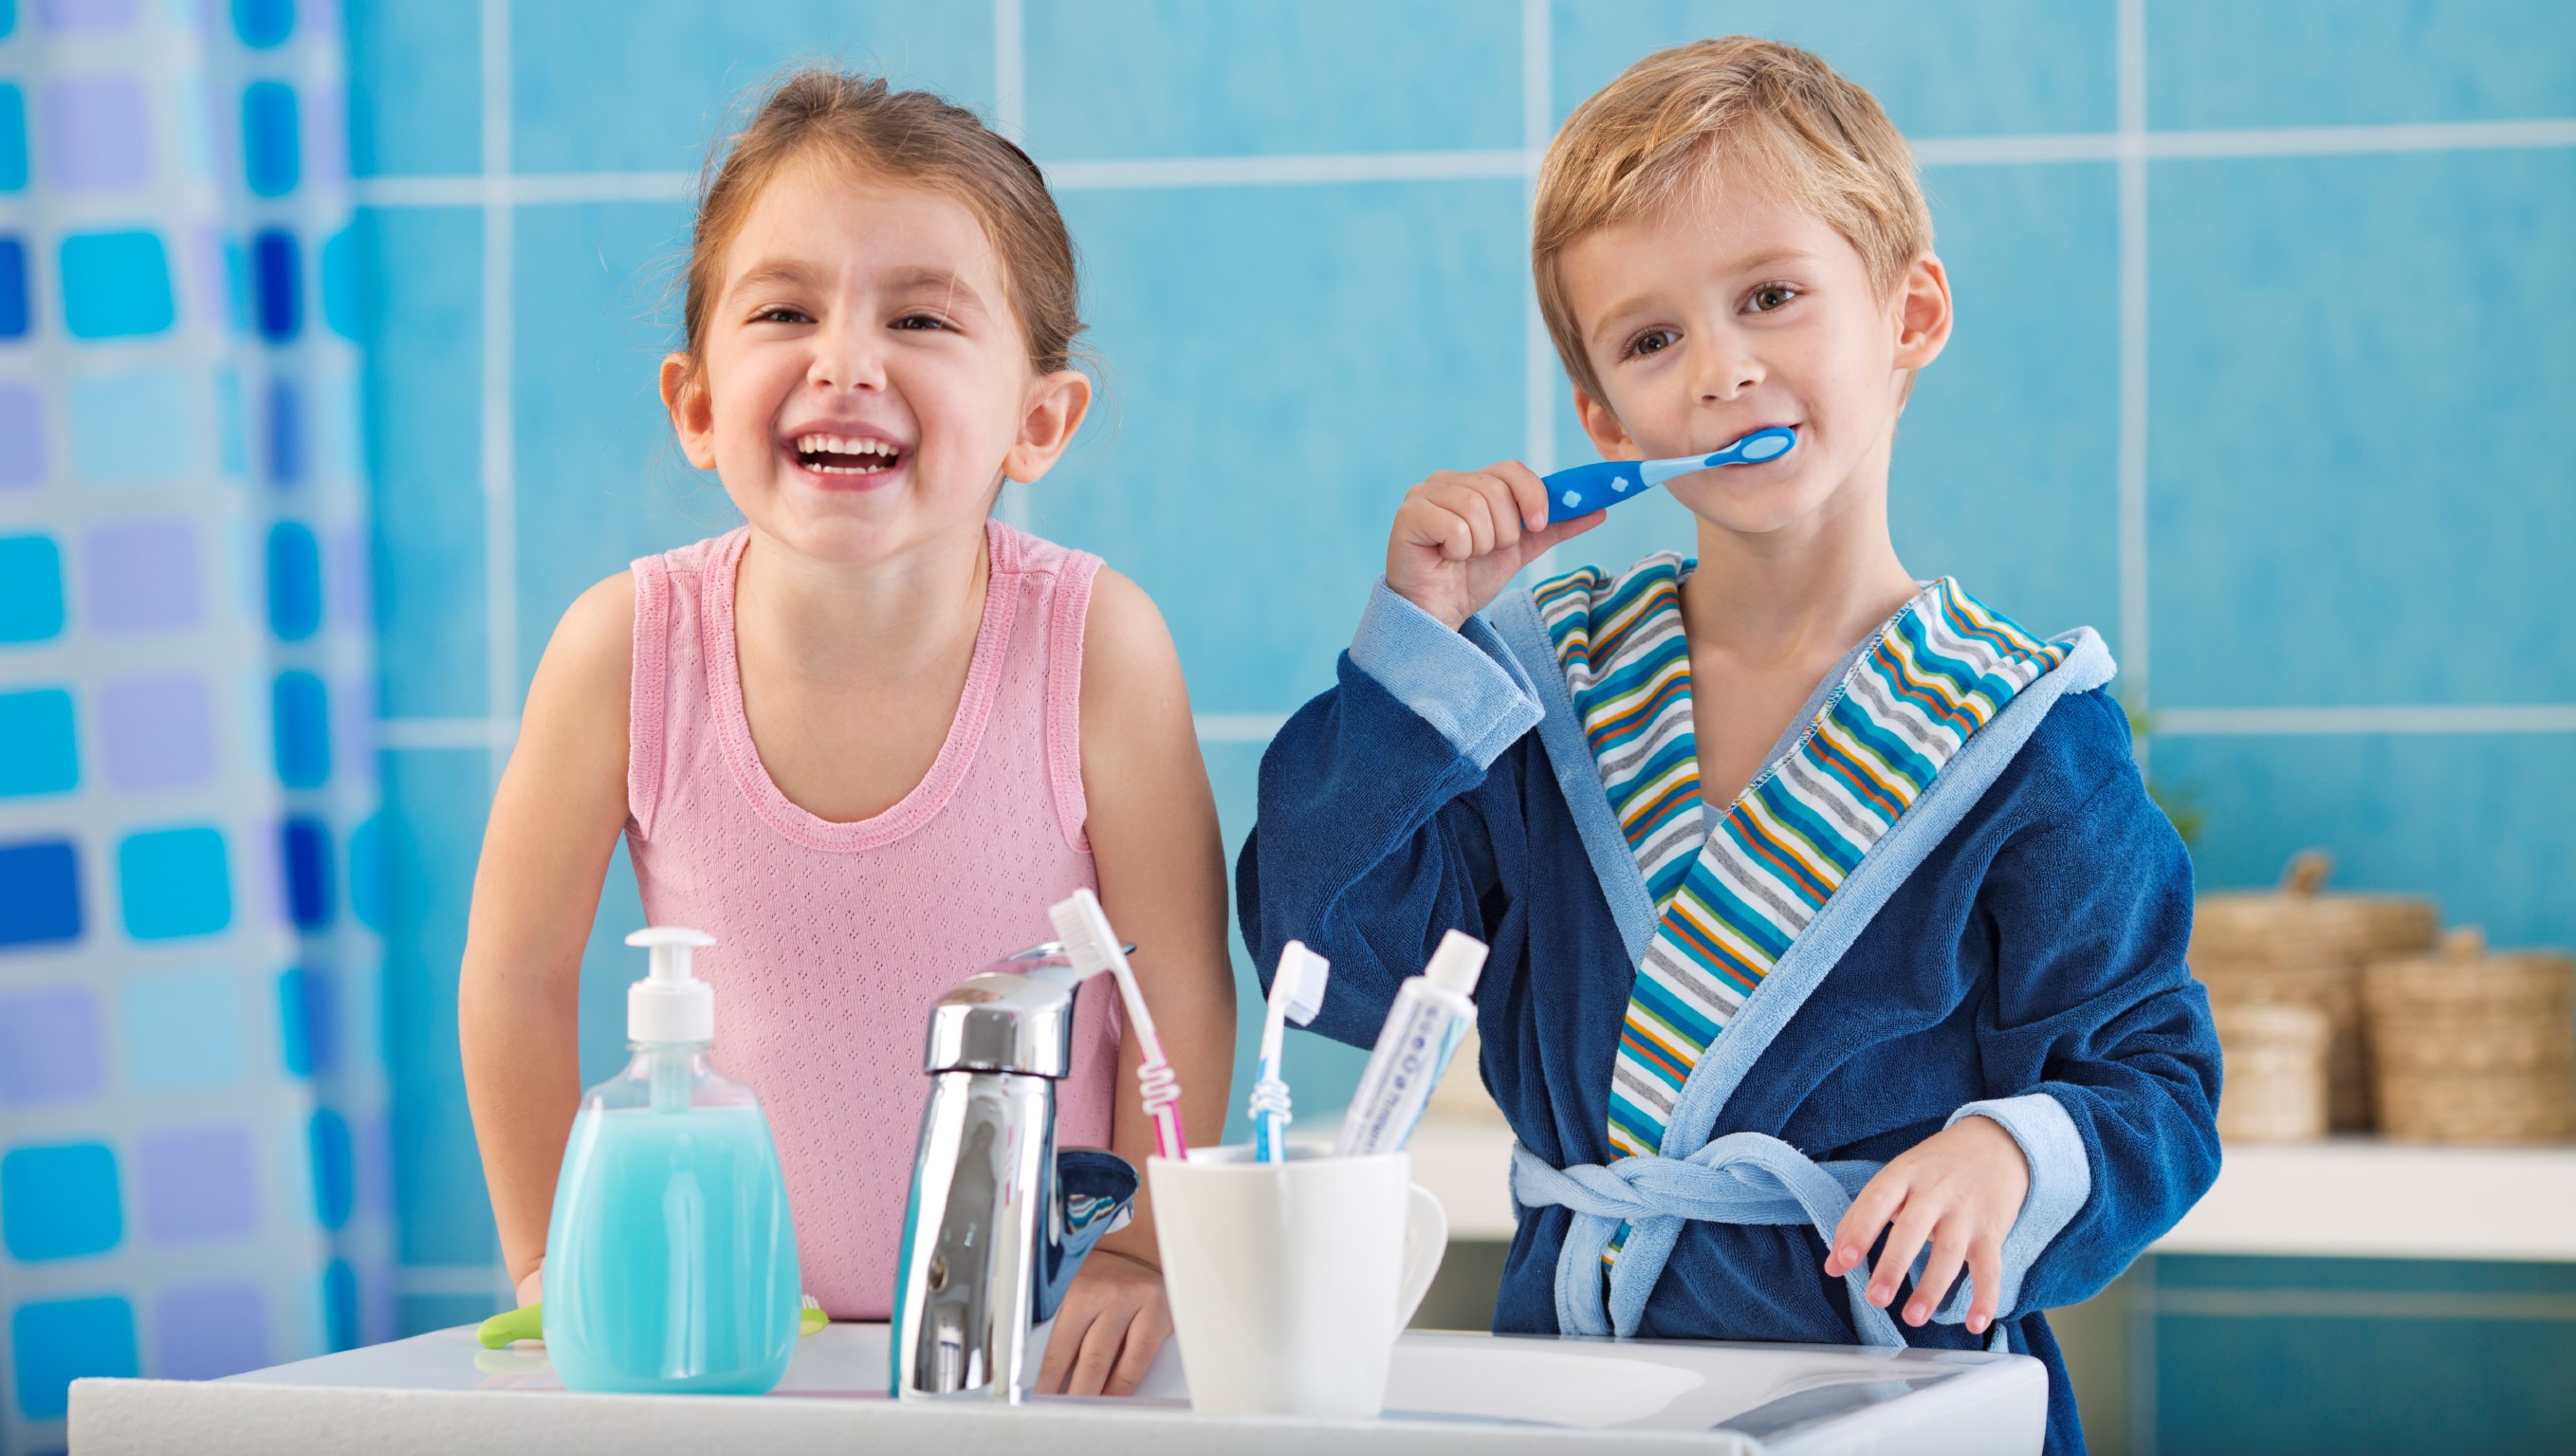 Kiat Merawat Kesehatan Gigi Anak gigi anak sehat Tertelan Obat Kumur